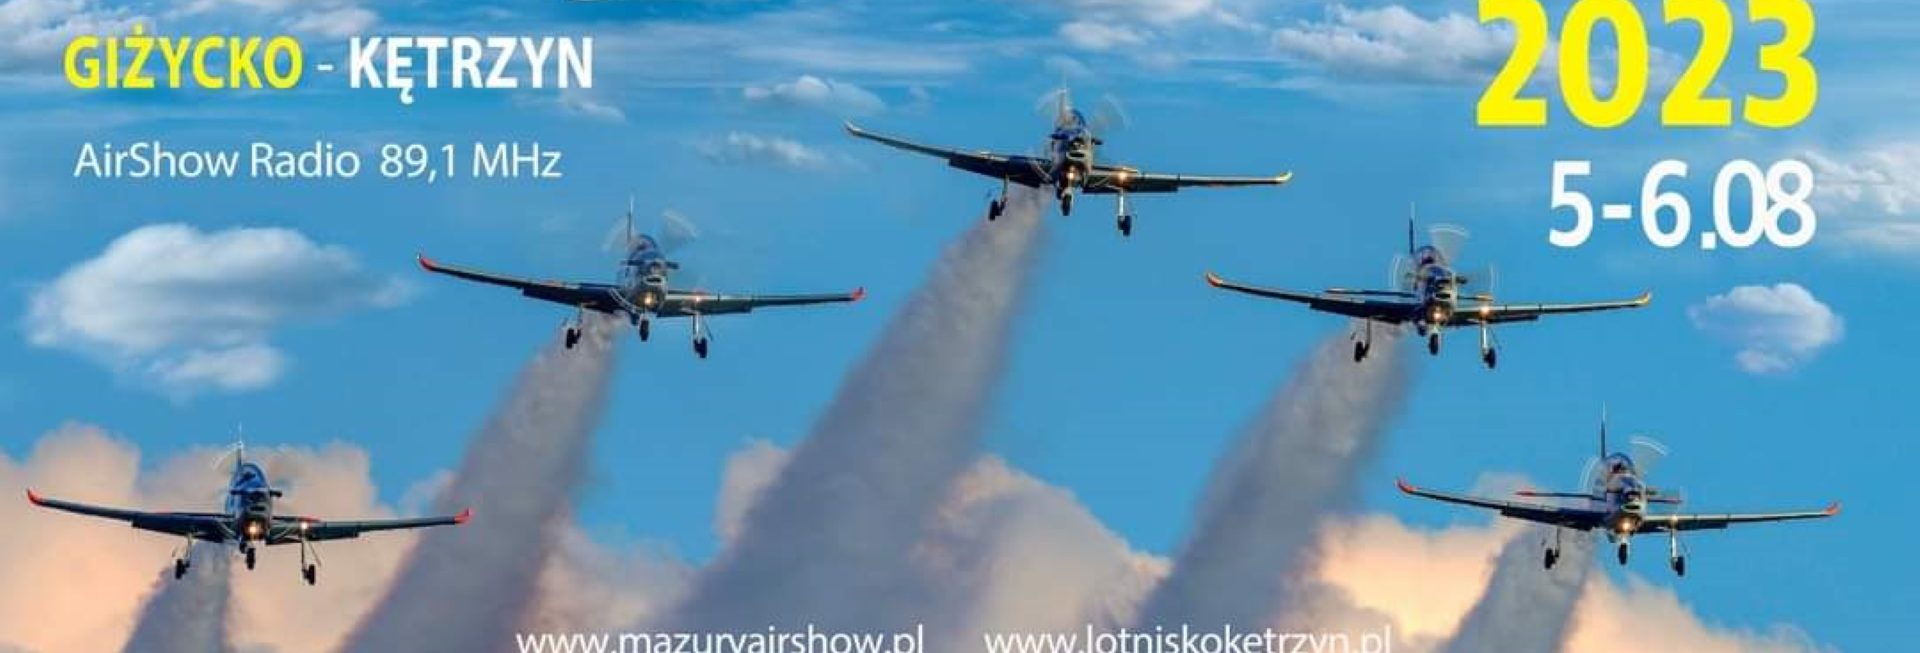 Mazury Airshow